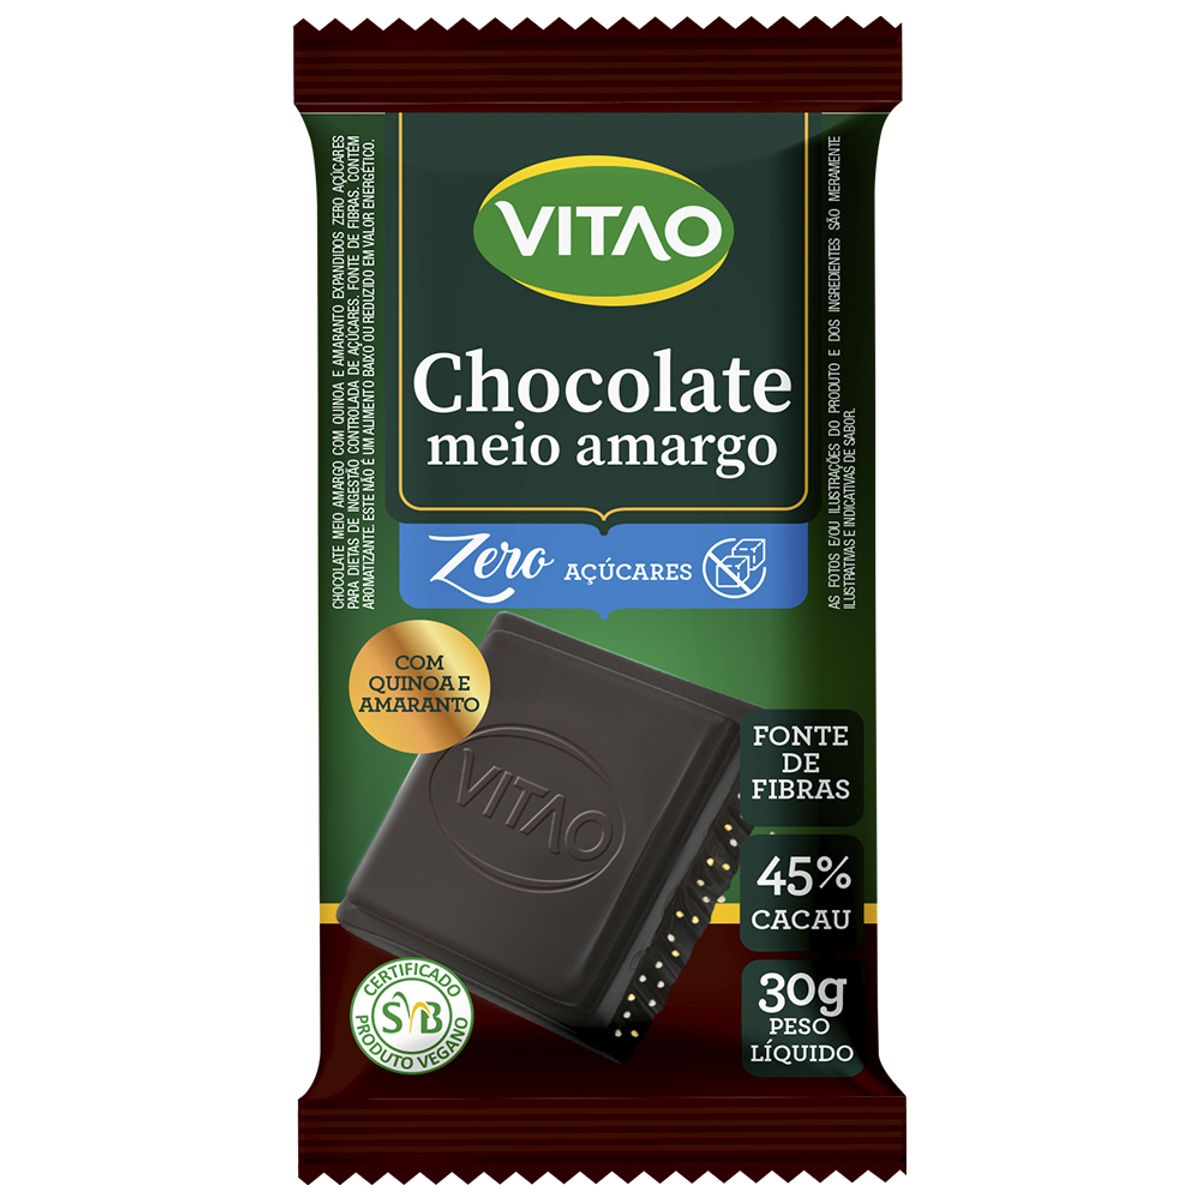 Chocolate Meio Amargo 45% Cacau com Grãos Ancestrais Zero Açúcar Vitao Pacote 30g